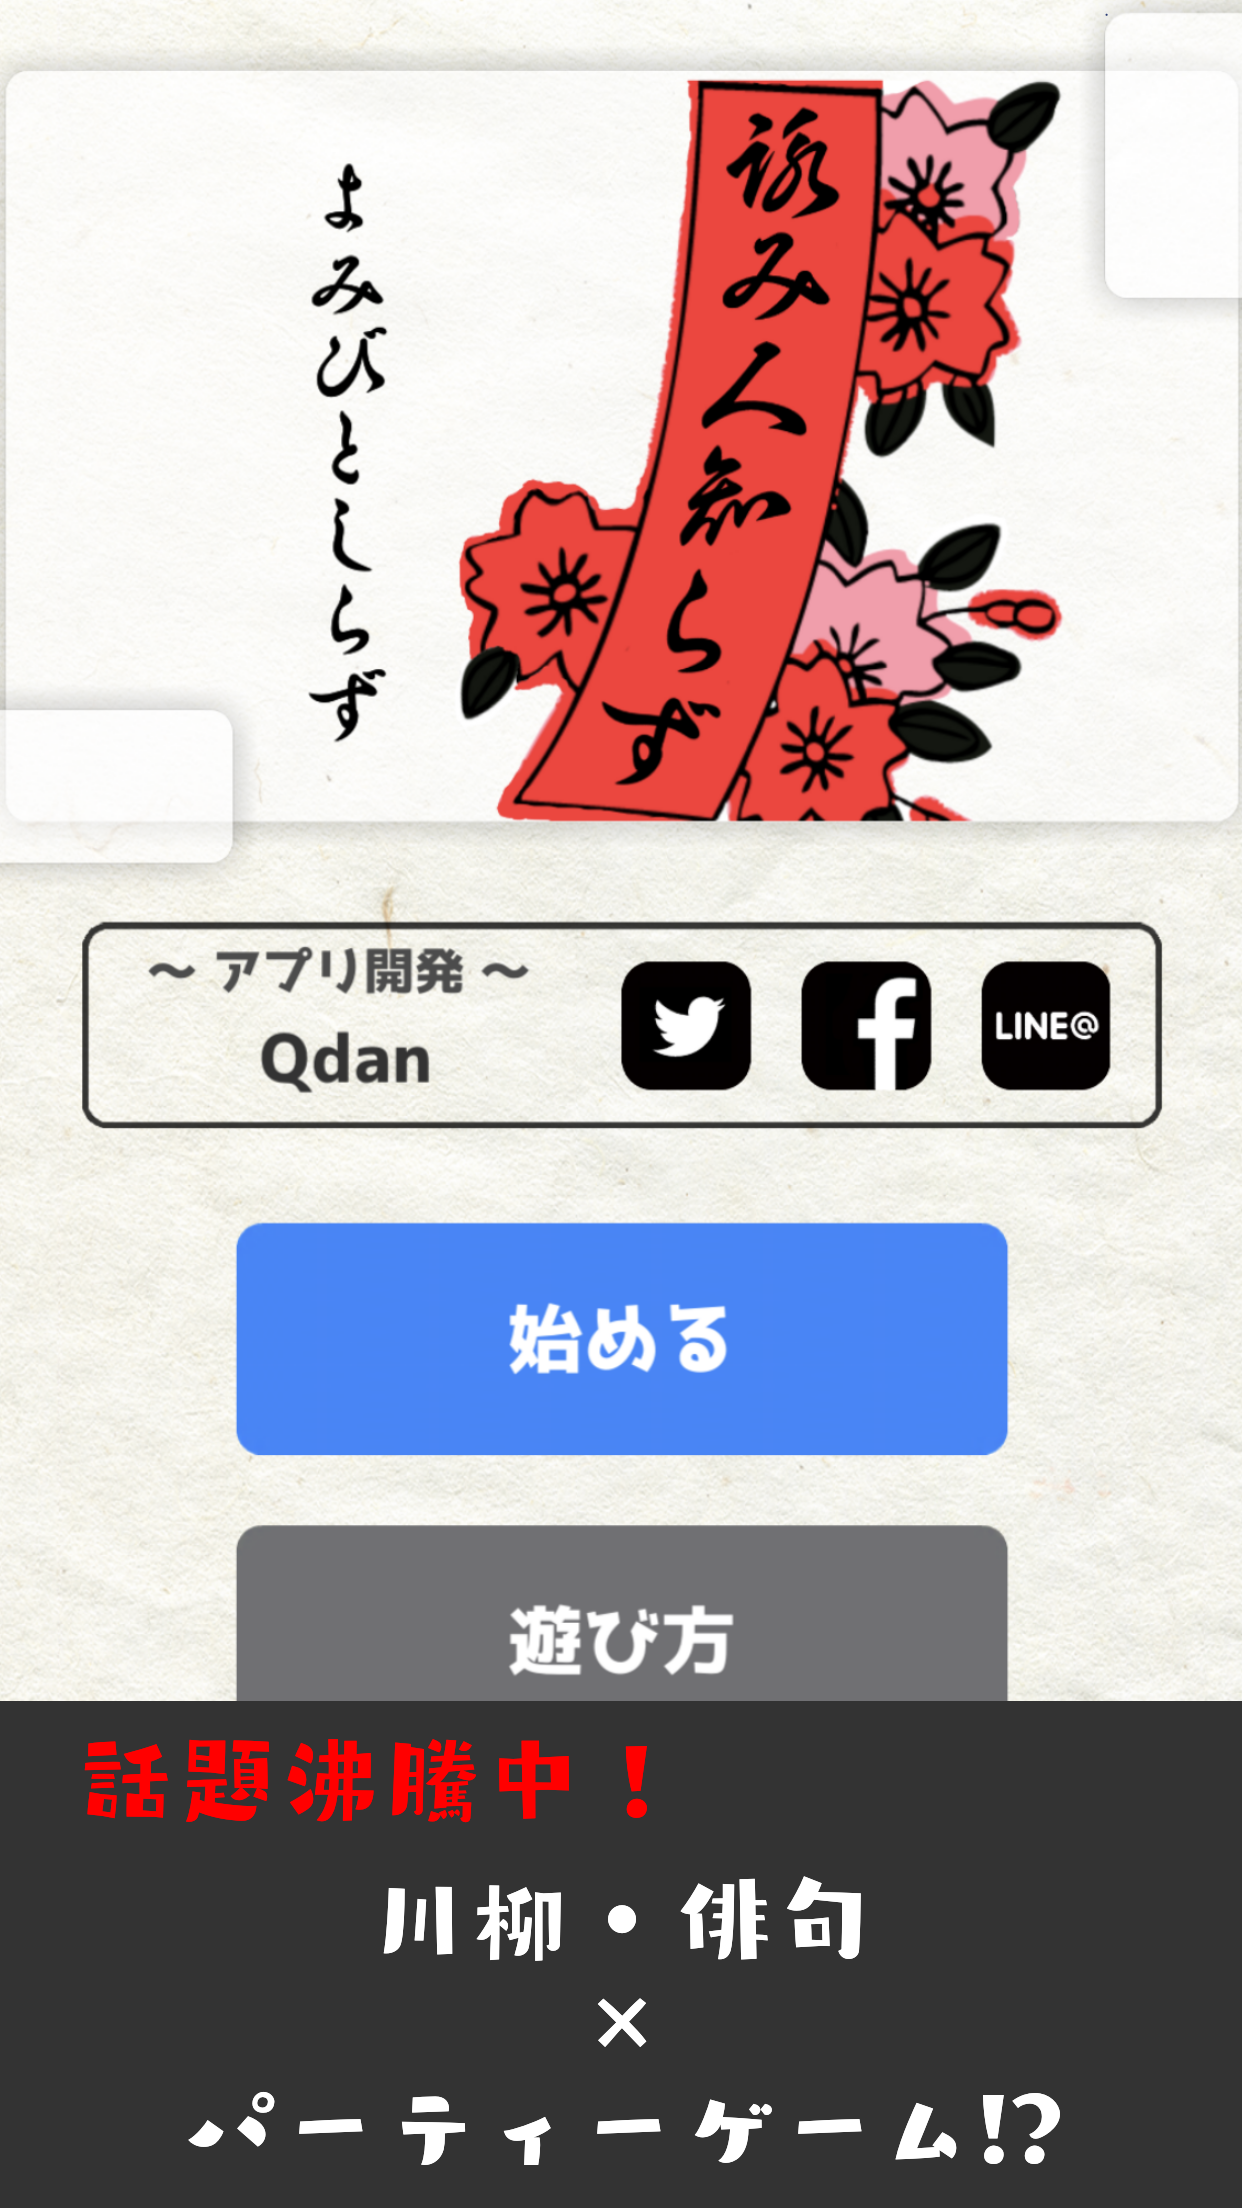 Screenshot 1 of Walang nakakaalam kung sino ang sumulat nito -575, haiku, senryu, party game- 1.0.8